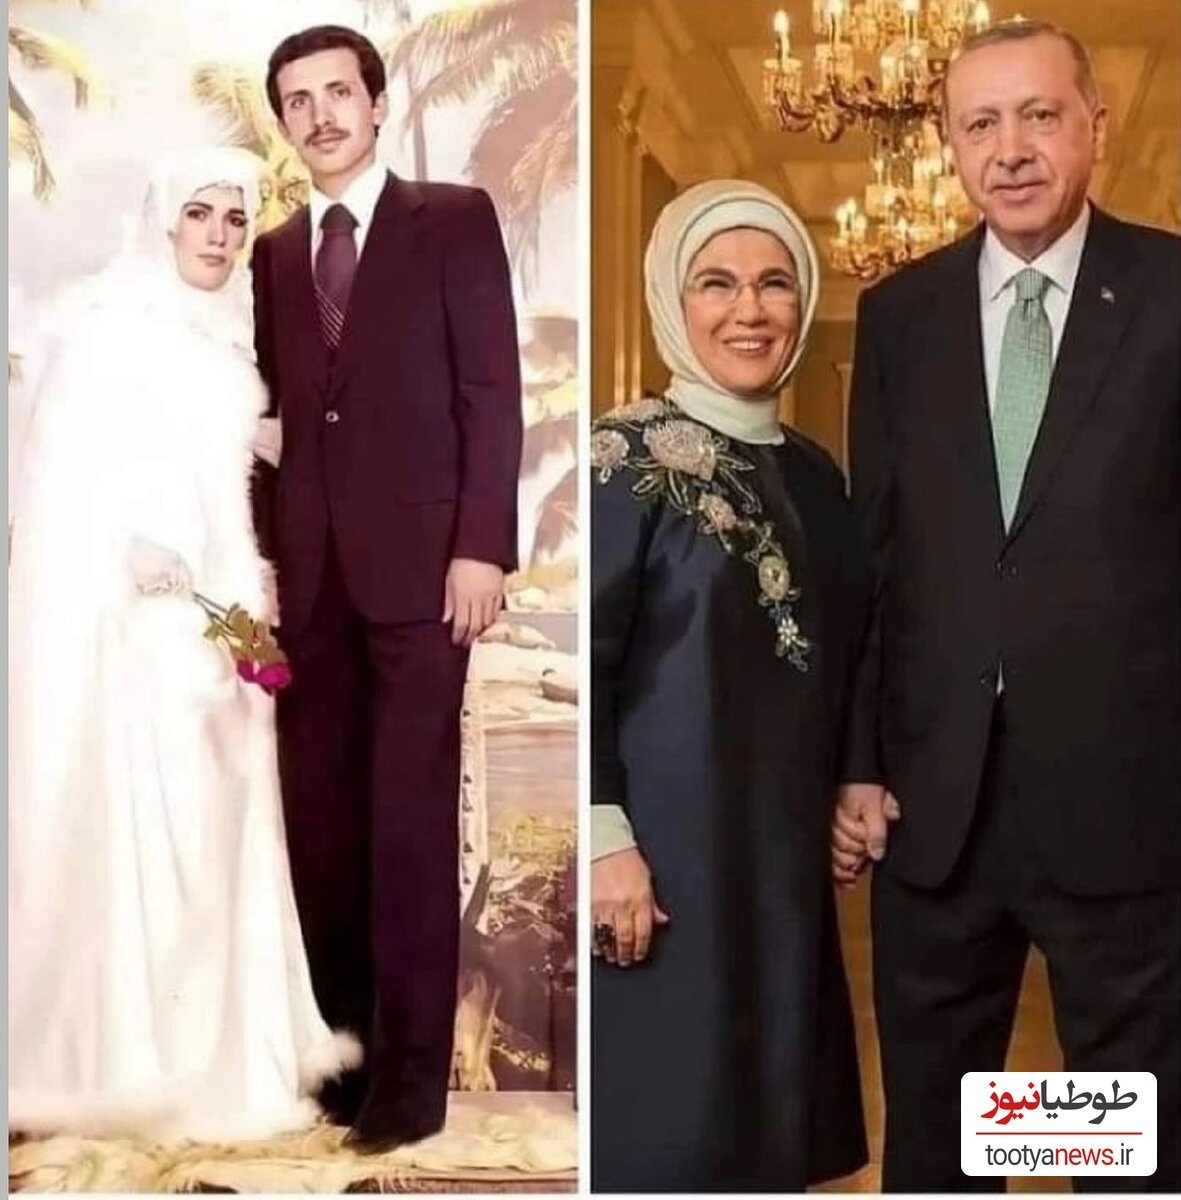 تصویری از مراسم عروسی اردوغان